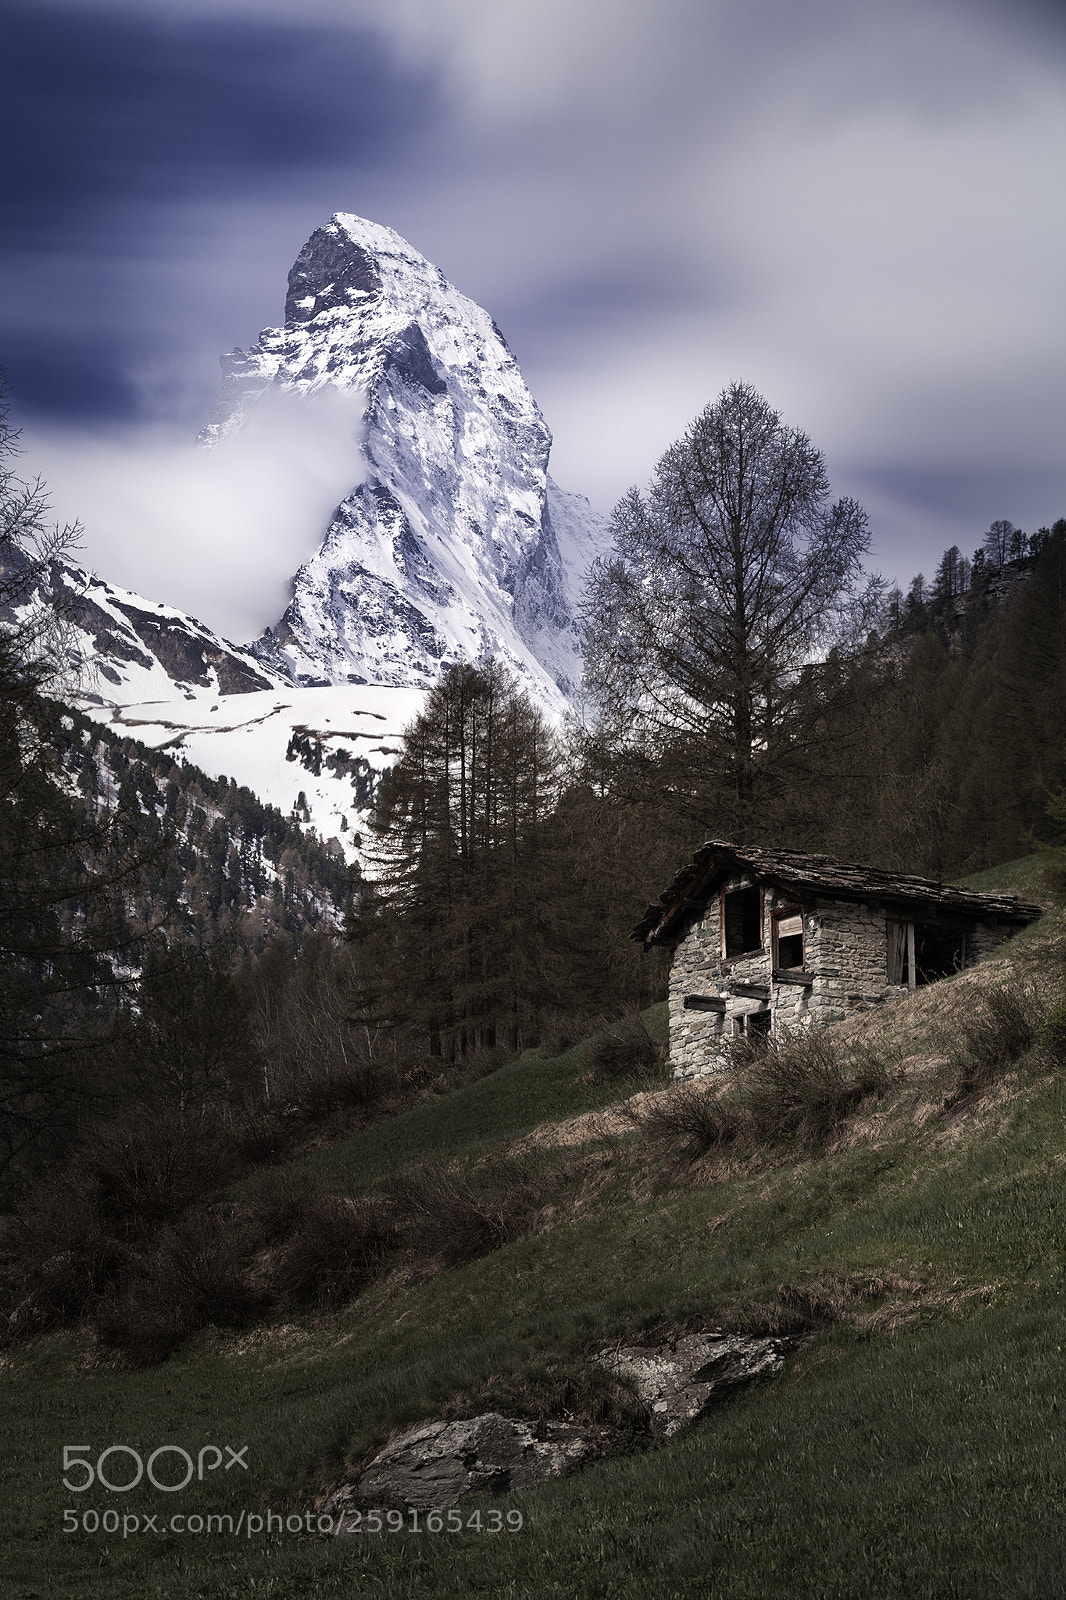 Canon EOS 5DS R sample photo. Matterhorn photography